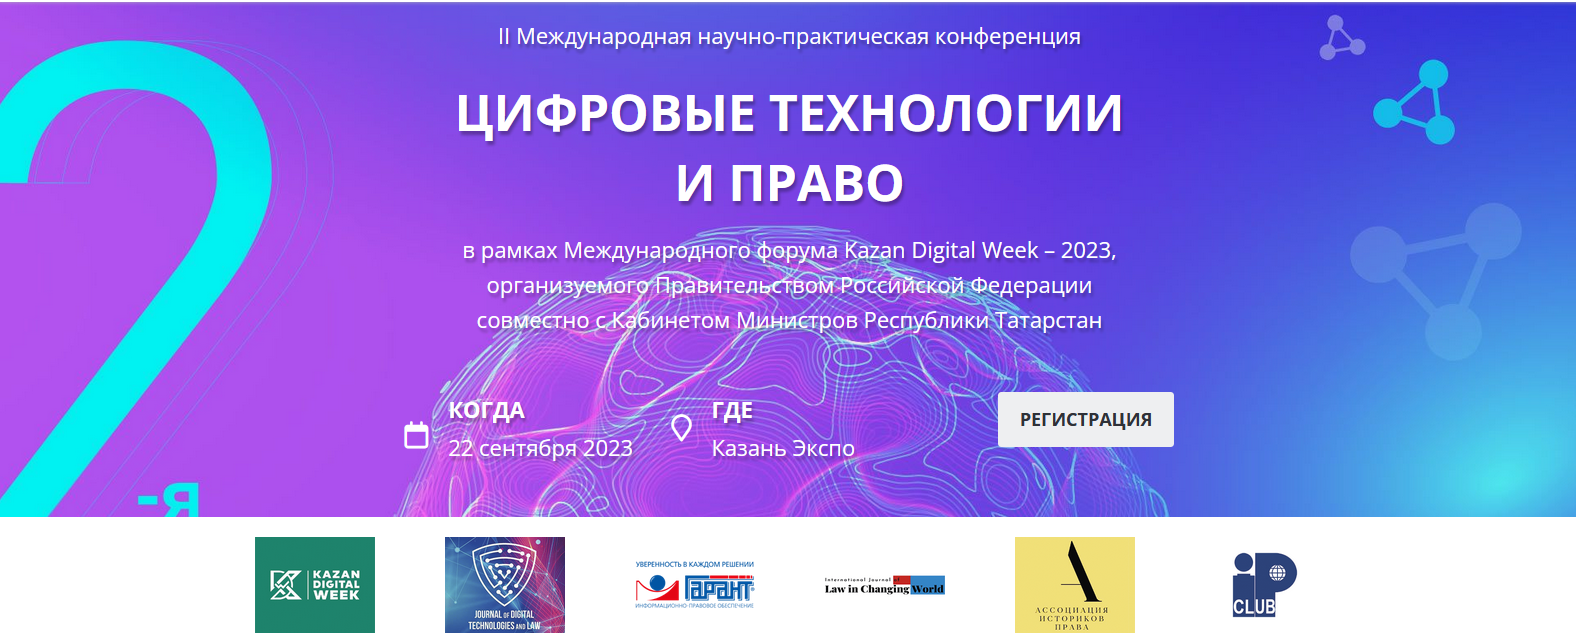 Компания "Гарант" проведет секцию по LegalTech на международной конференции "Цифровые технологии и право"